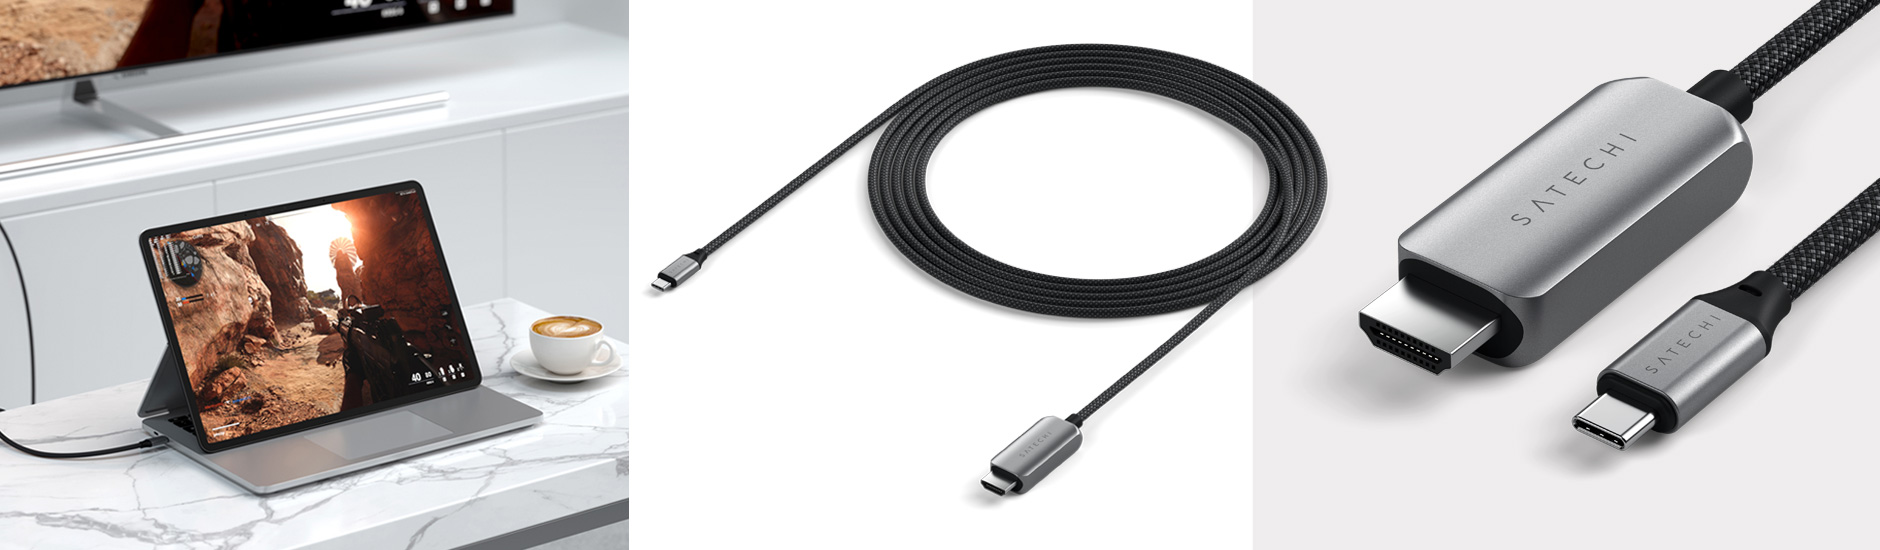 Кабель Satechi USB-C to HDMI 2.1 8K Cable и адаптер Satechi USB-C to HDMI 2.1 8K Adapter